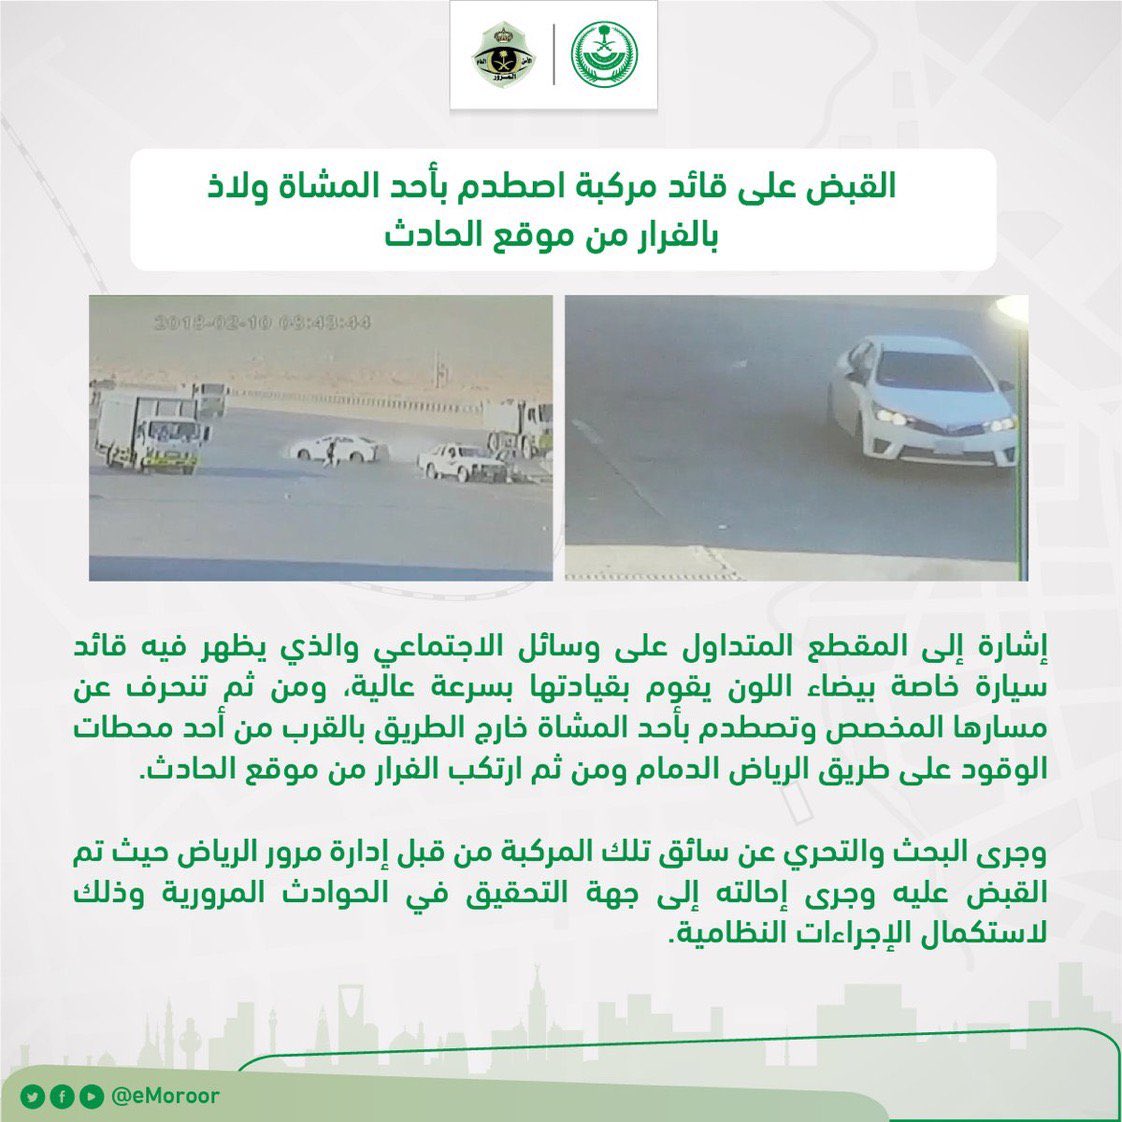 القبض على قائد مركبة اصطدم بأحد المشاة وهرب في الرياض